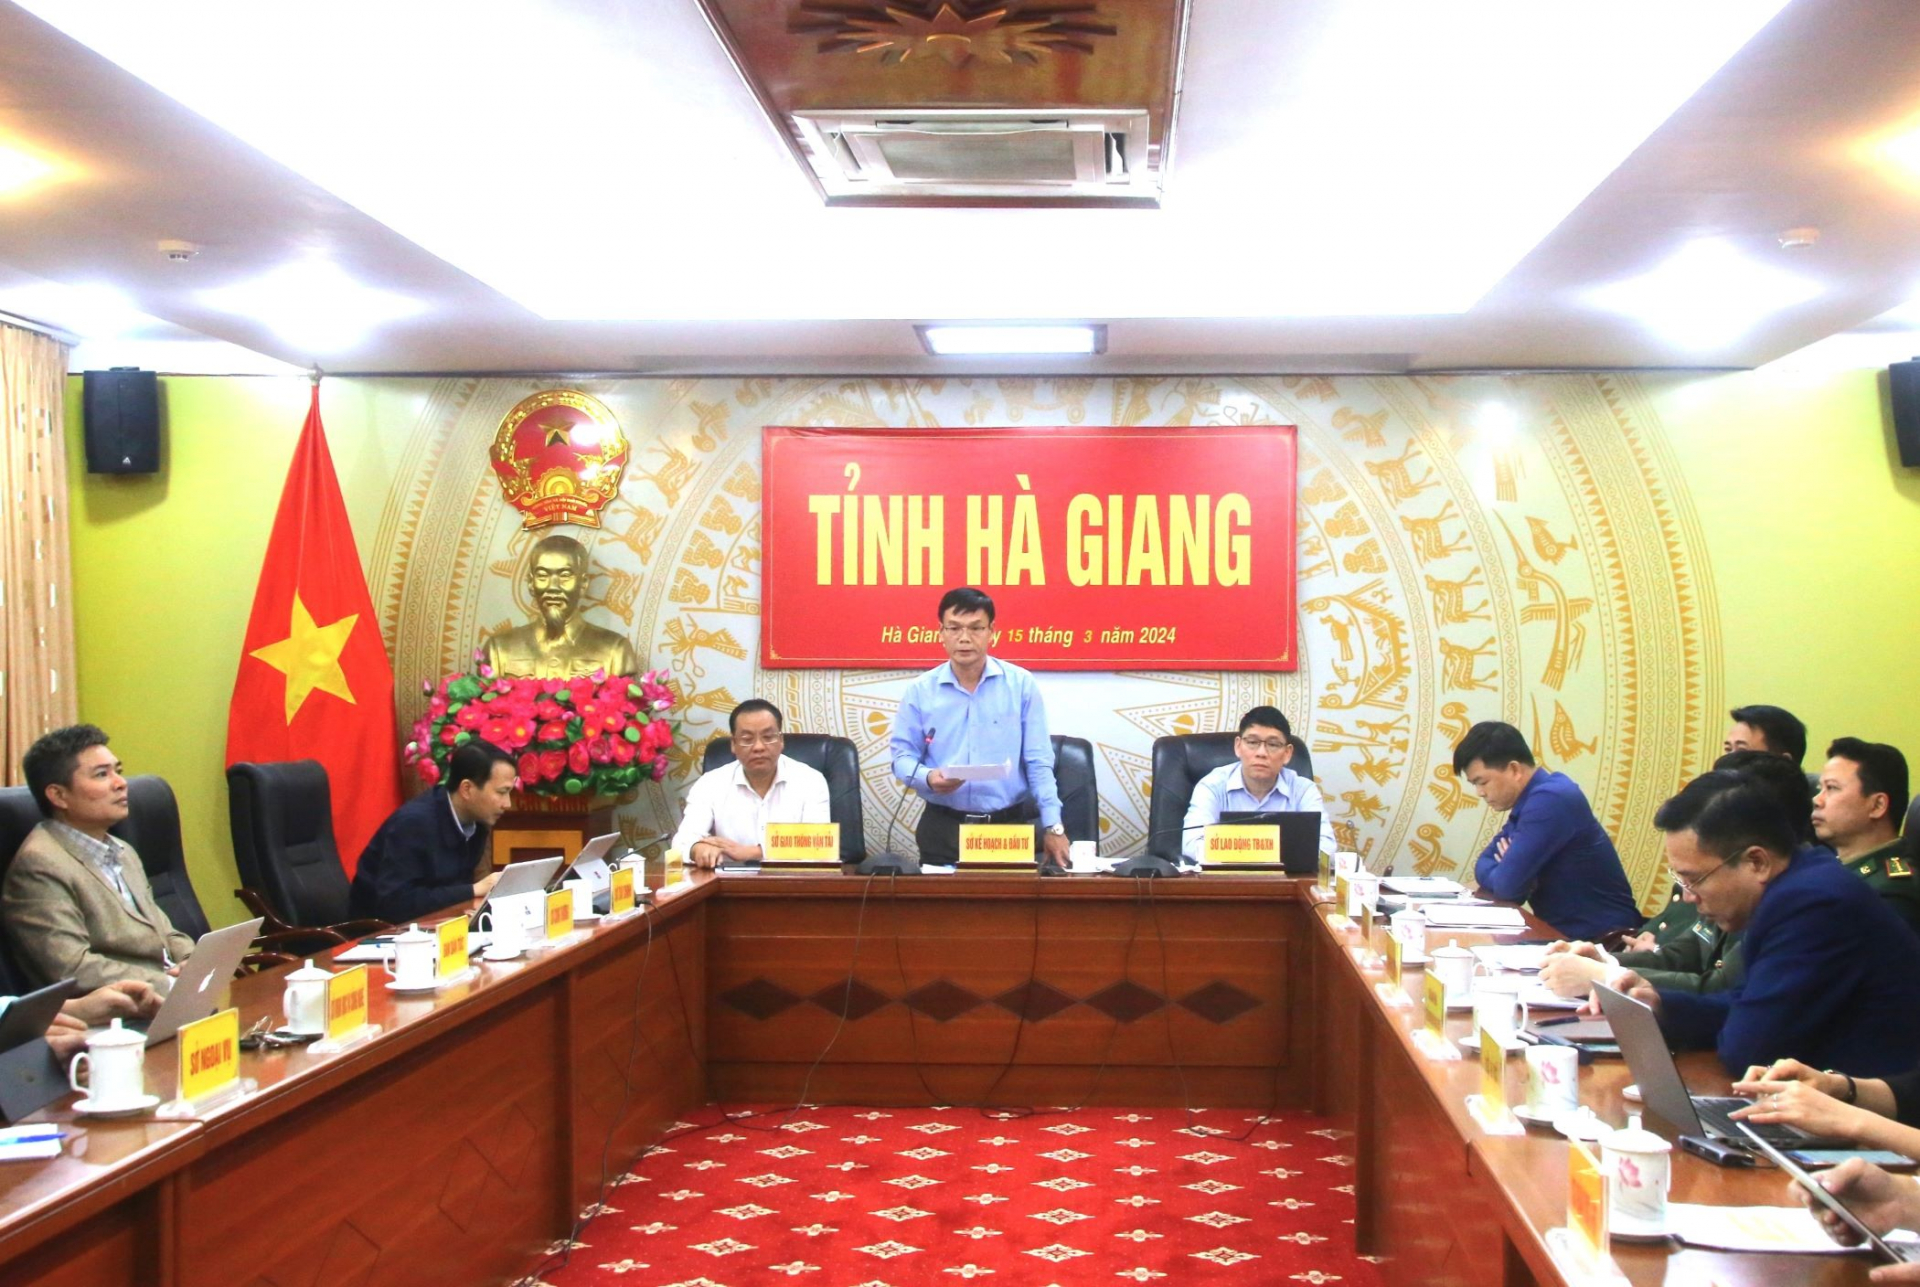 Phó Giám đốc Sở KH&ĐT Vũ Văn Hồng phát biểu ý kiến tại cuộc họp.